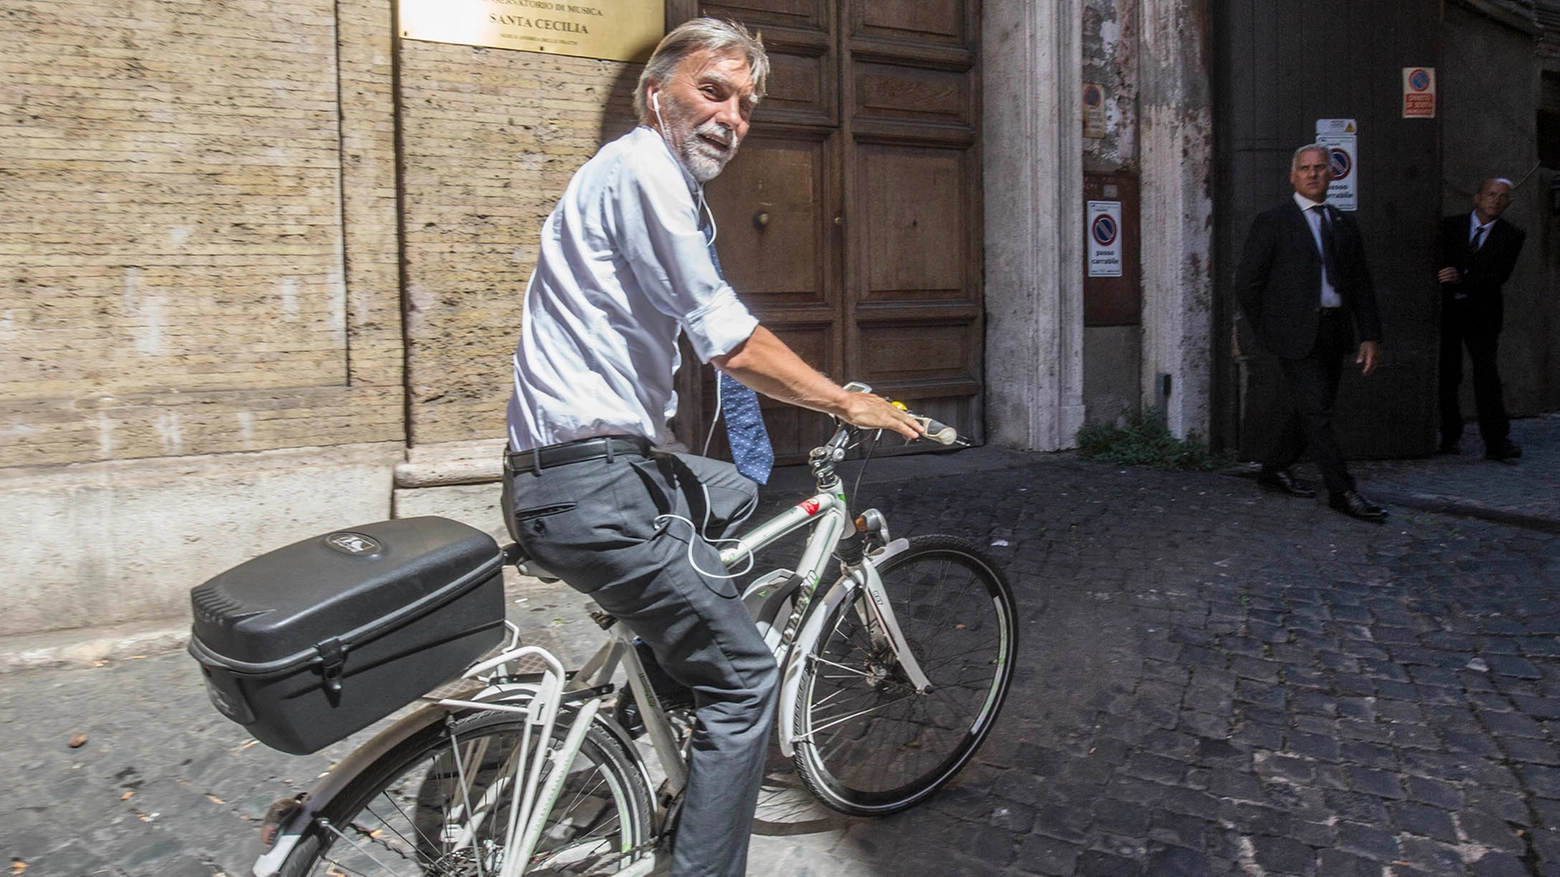 Graziano Delrio, appassionato ciclista